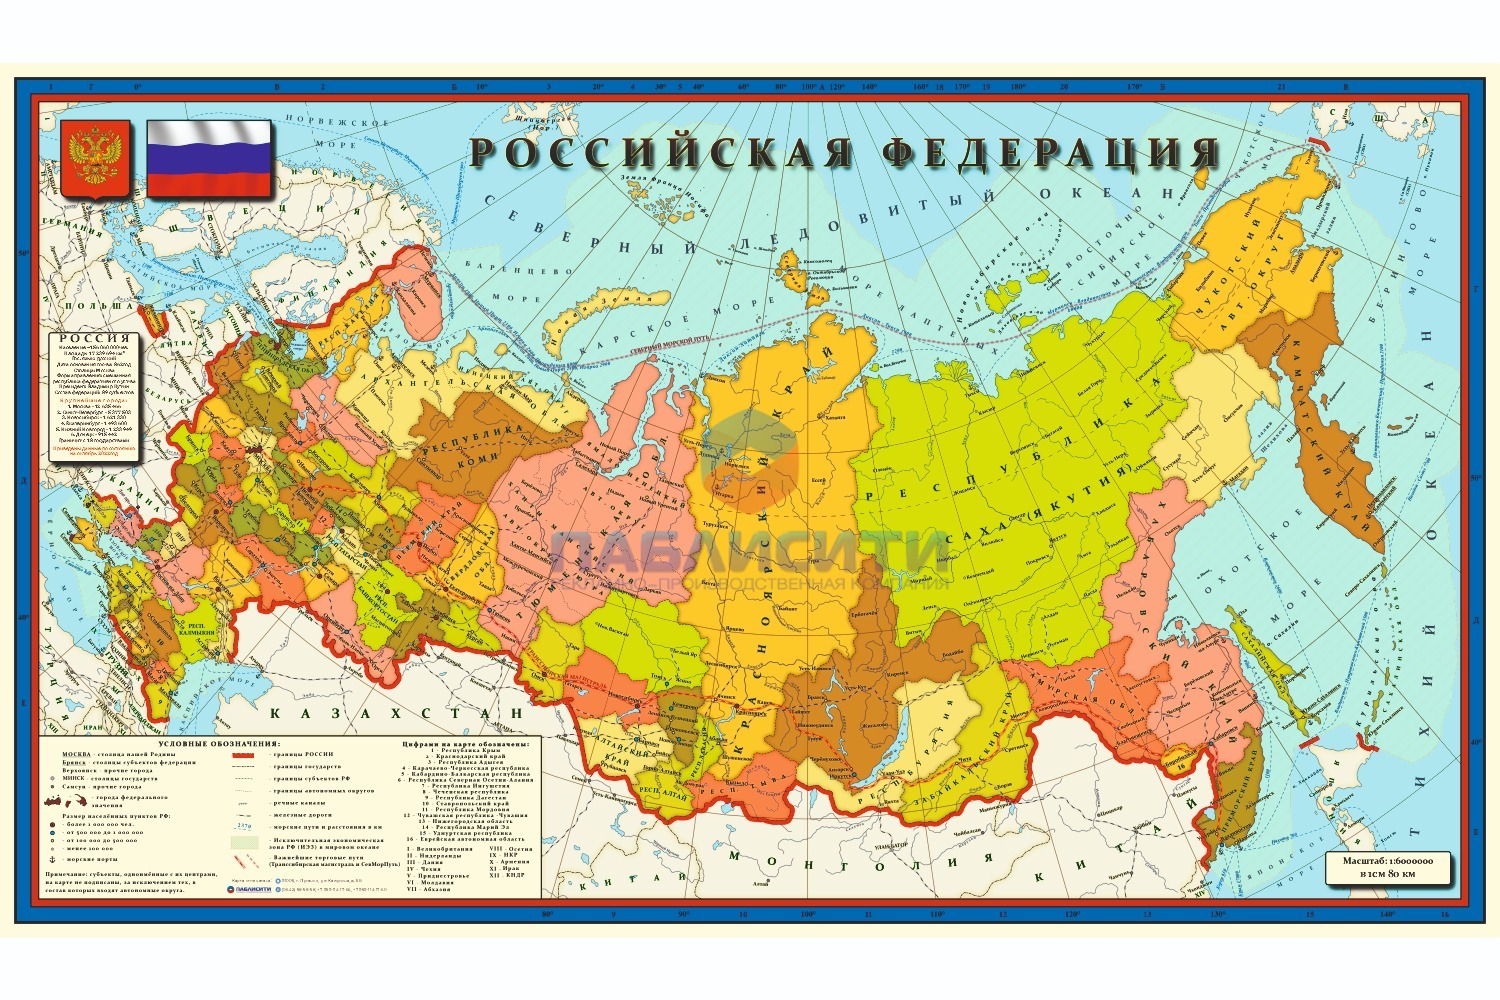 Карта Российской Федерации 1500х880мм, в 1см 80км